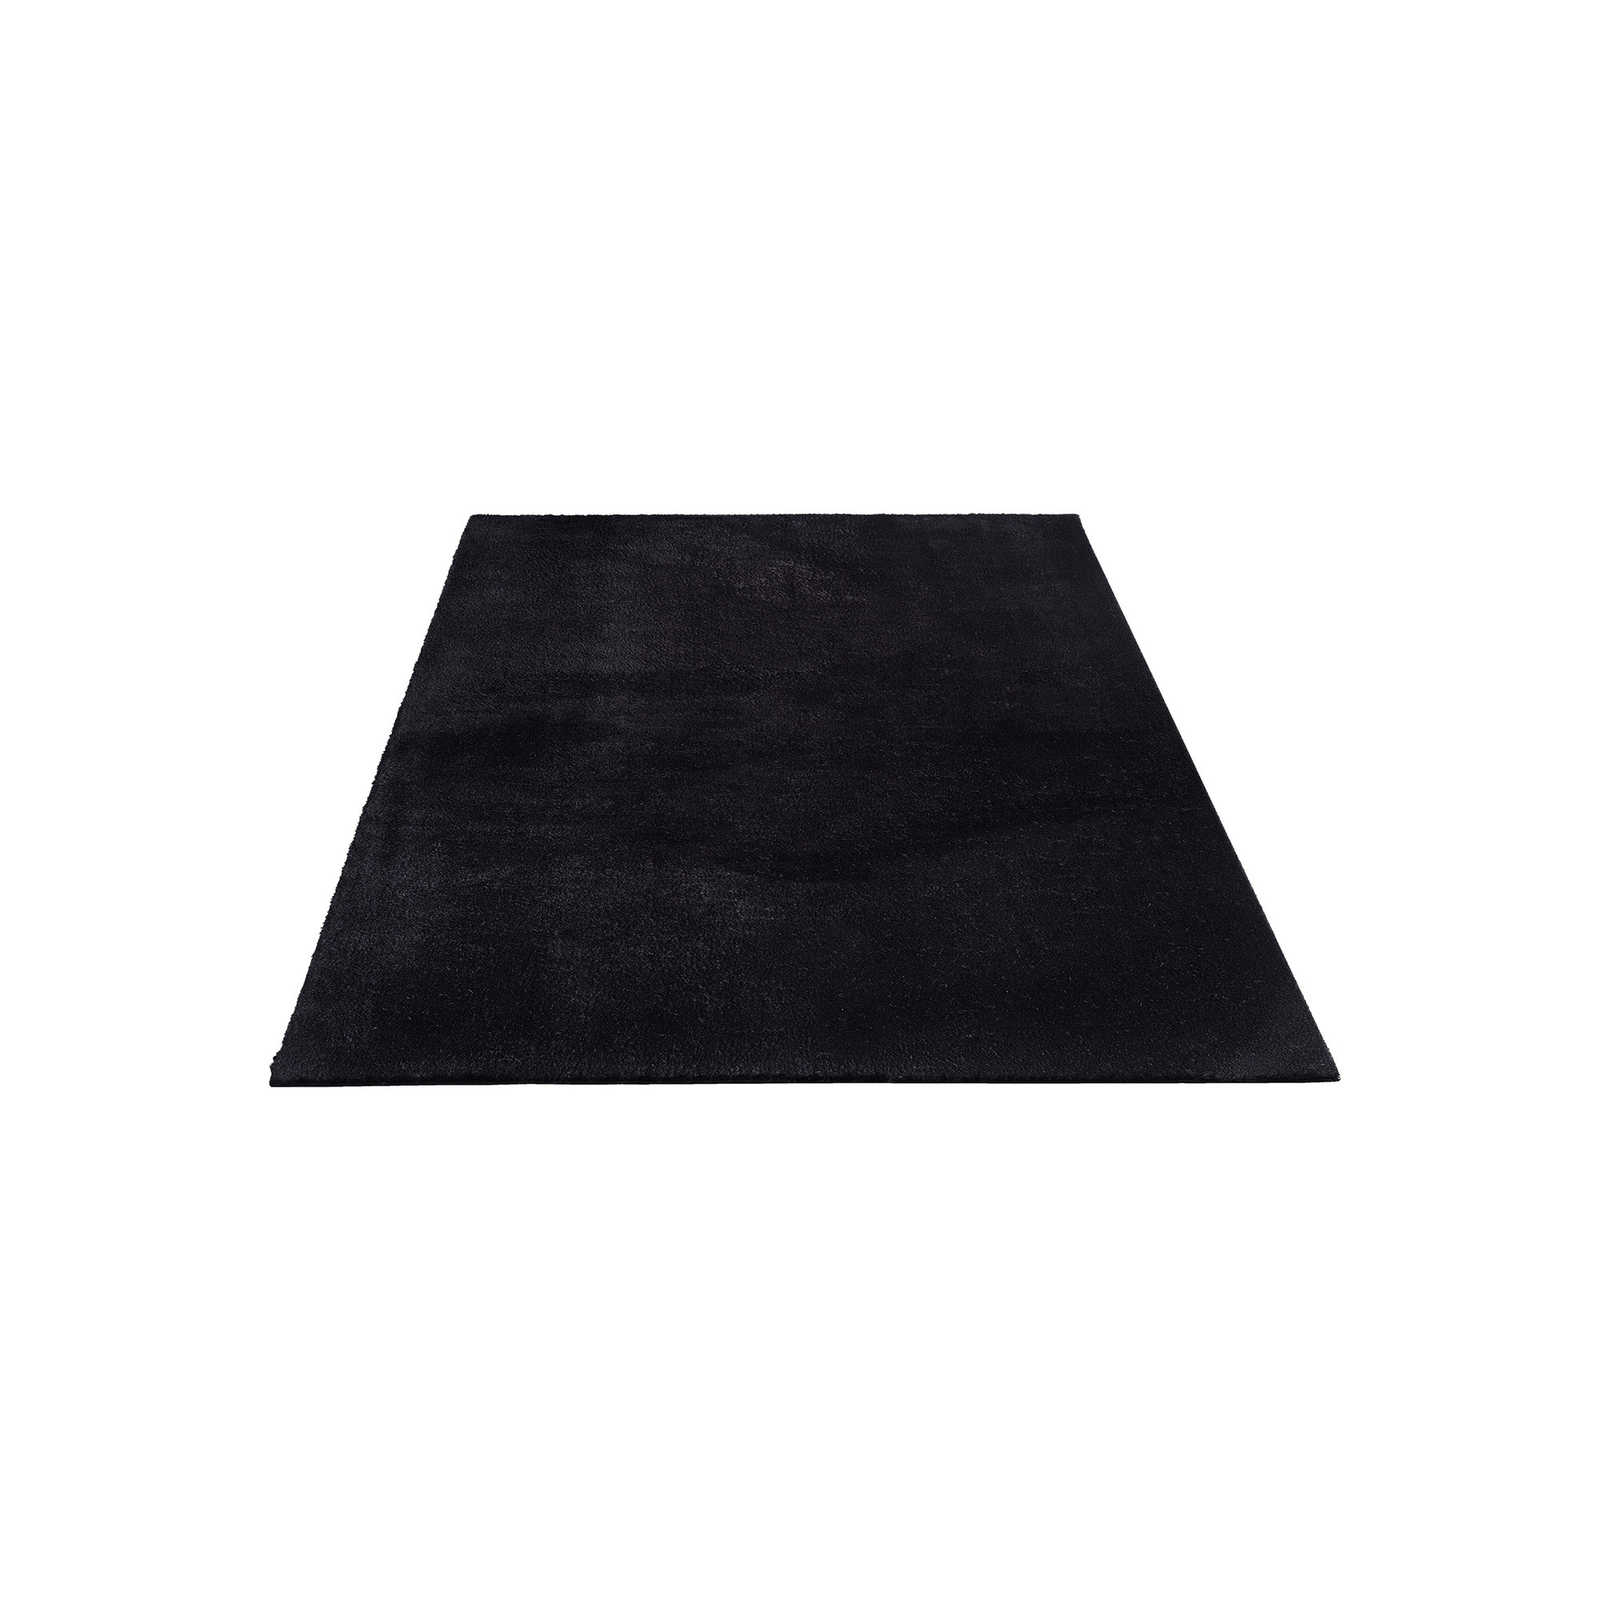 Fluweelzacht hoogpolig tapijt in zwart - 230 x 160 cm
